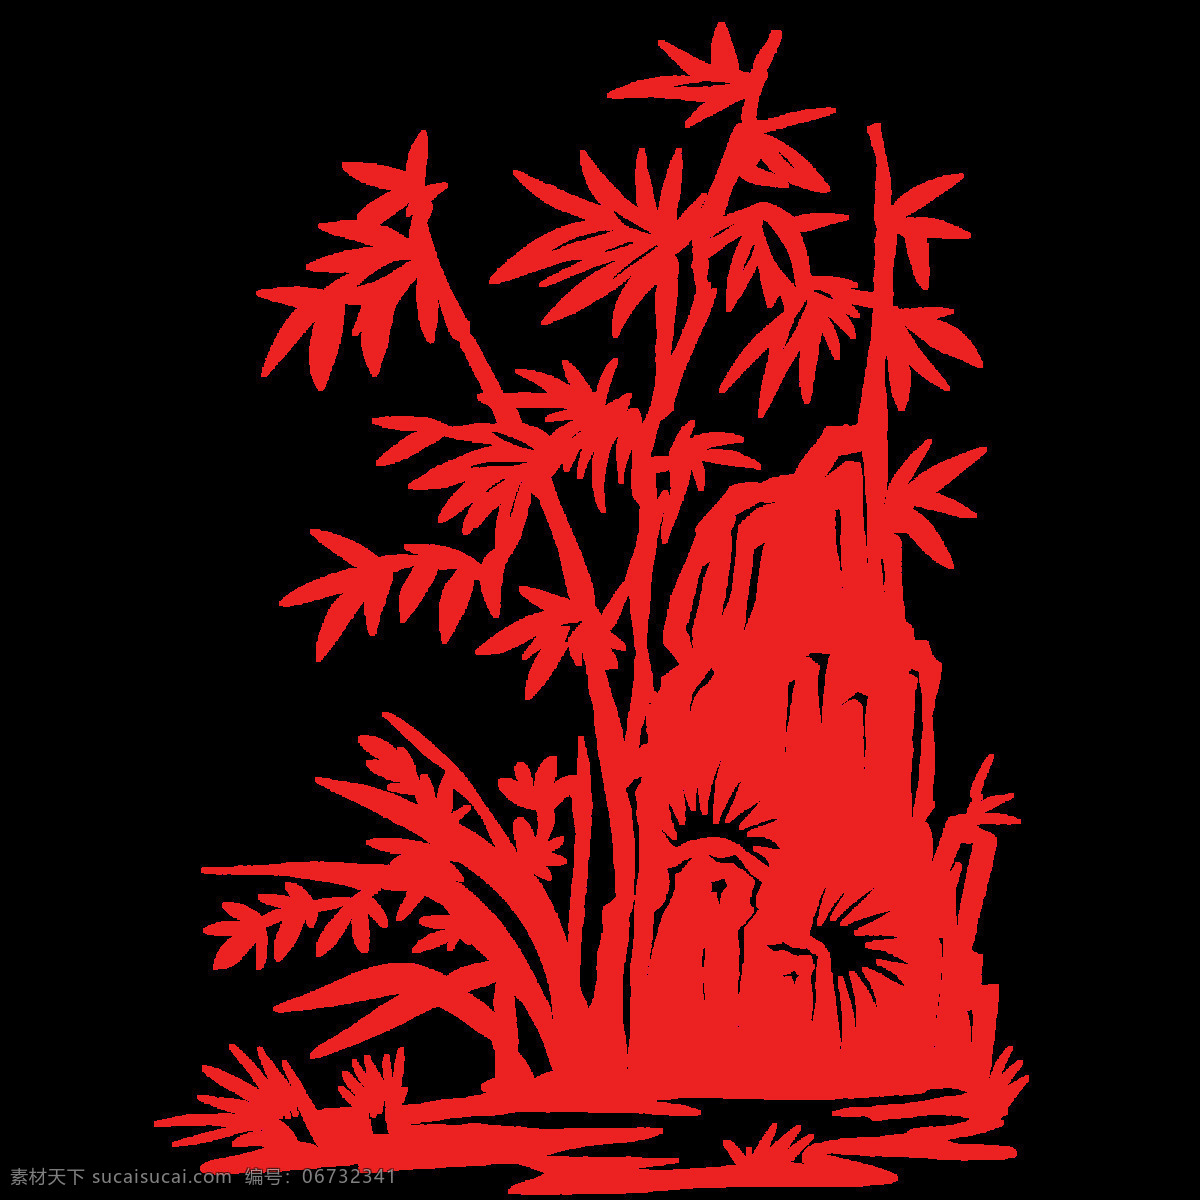 竹子剪纸 立体 中国风 3d 微立体 花卉 花朵 花草 城市 建筑 剪影 促销 装饰 免费模版 平面模版 免费素材 植物 红色 剪纸 元素 红色中国风 植物元素 红色元素 文化艺术 传统文化